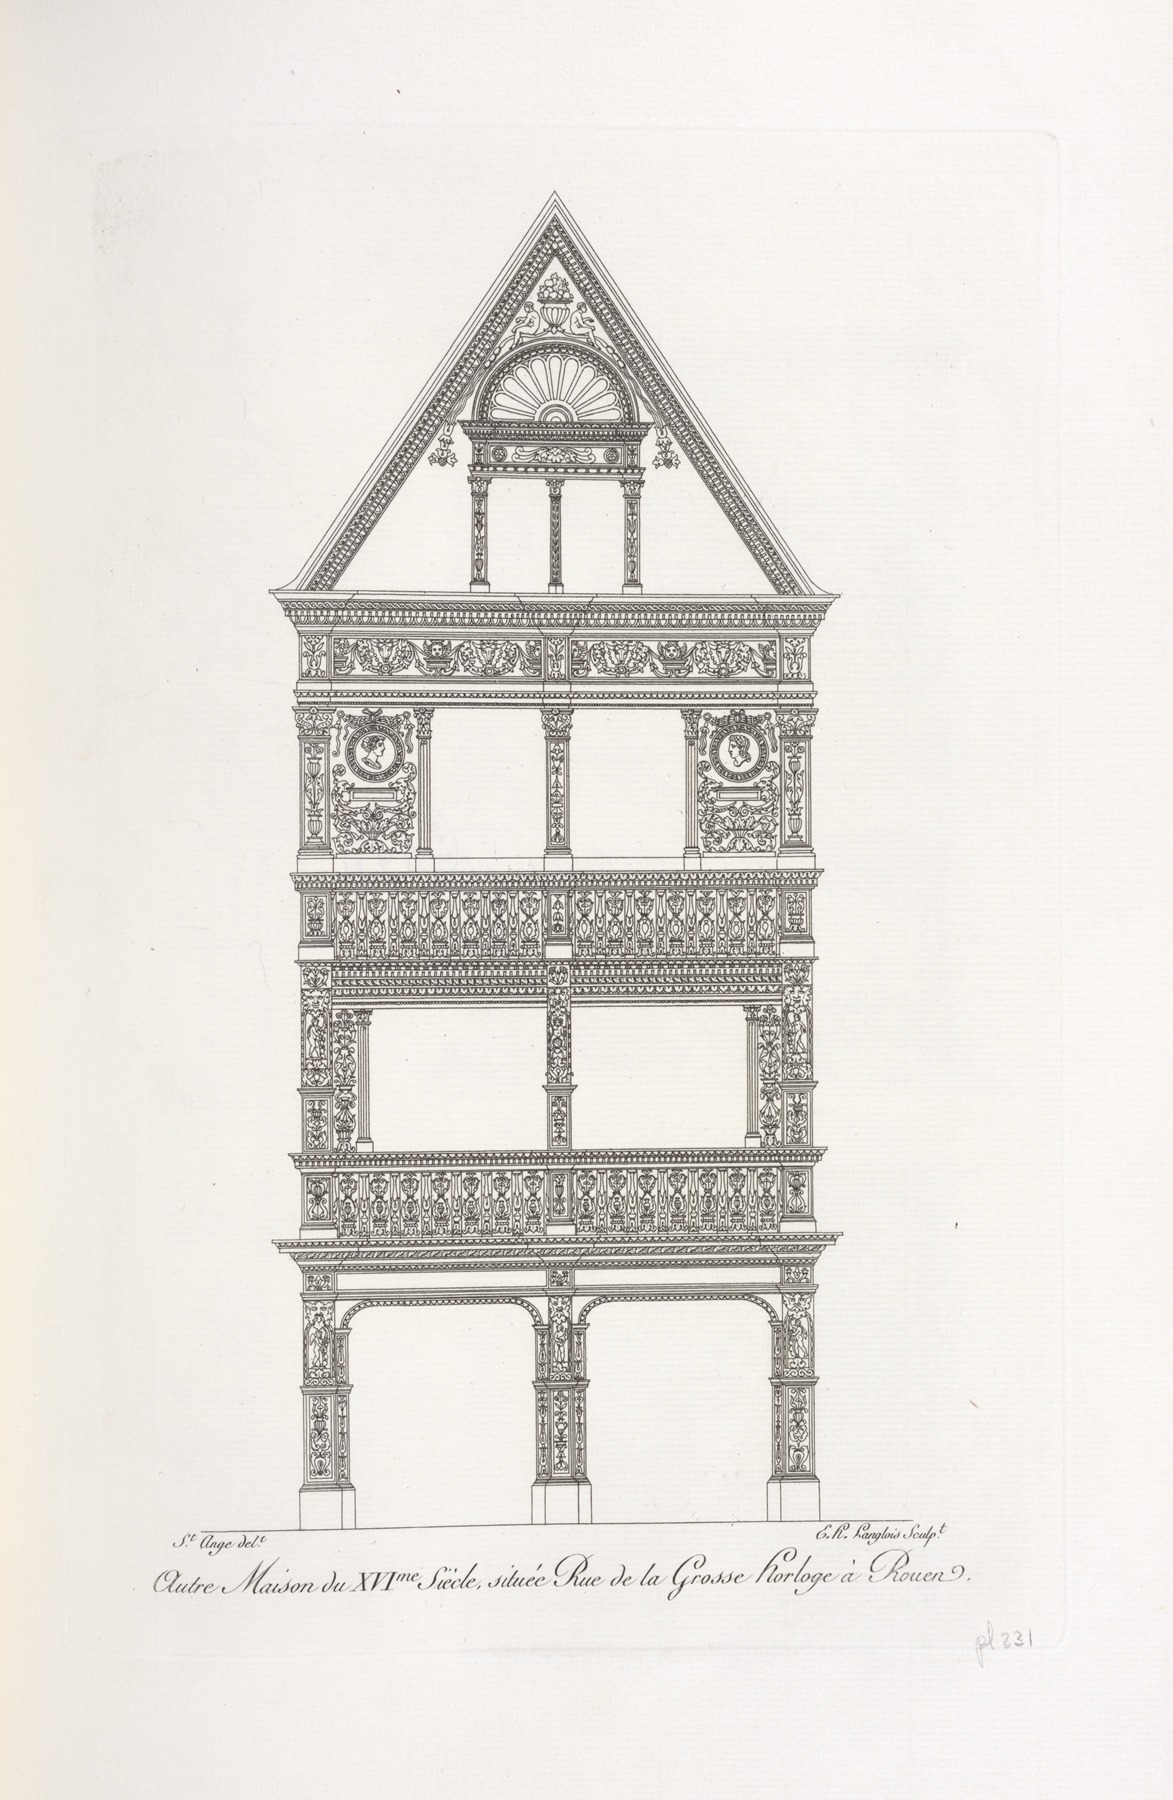 Nicolas Xavier Willemin - Autre maison du XVIme. siècle, située rue de la grosse horloge à Rouen.